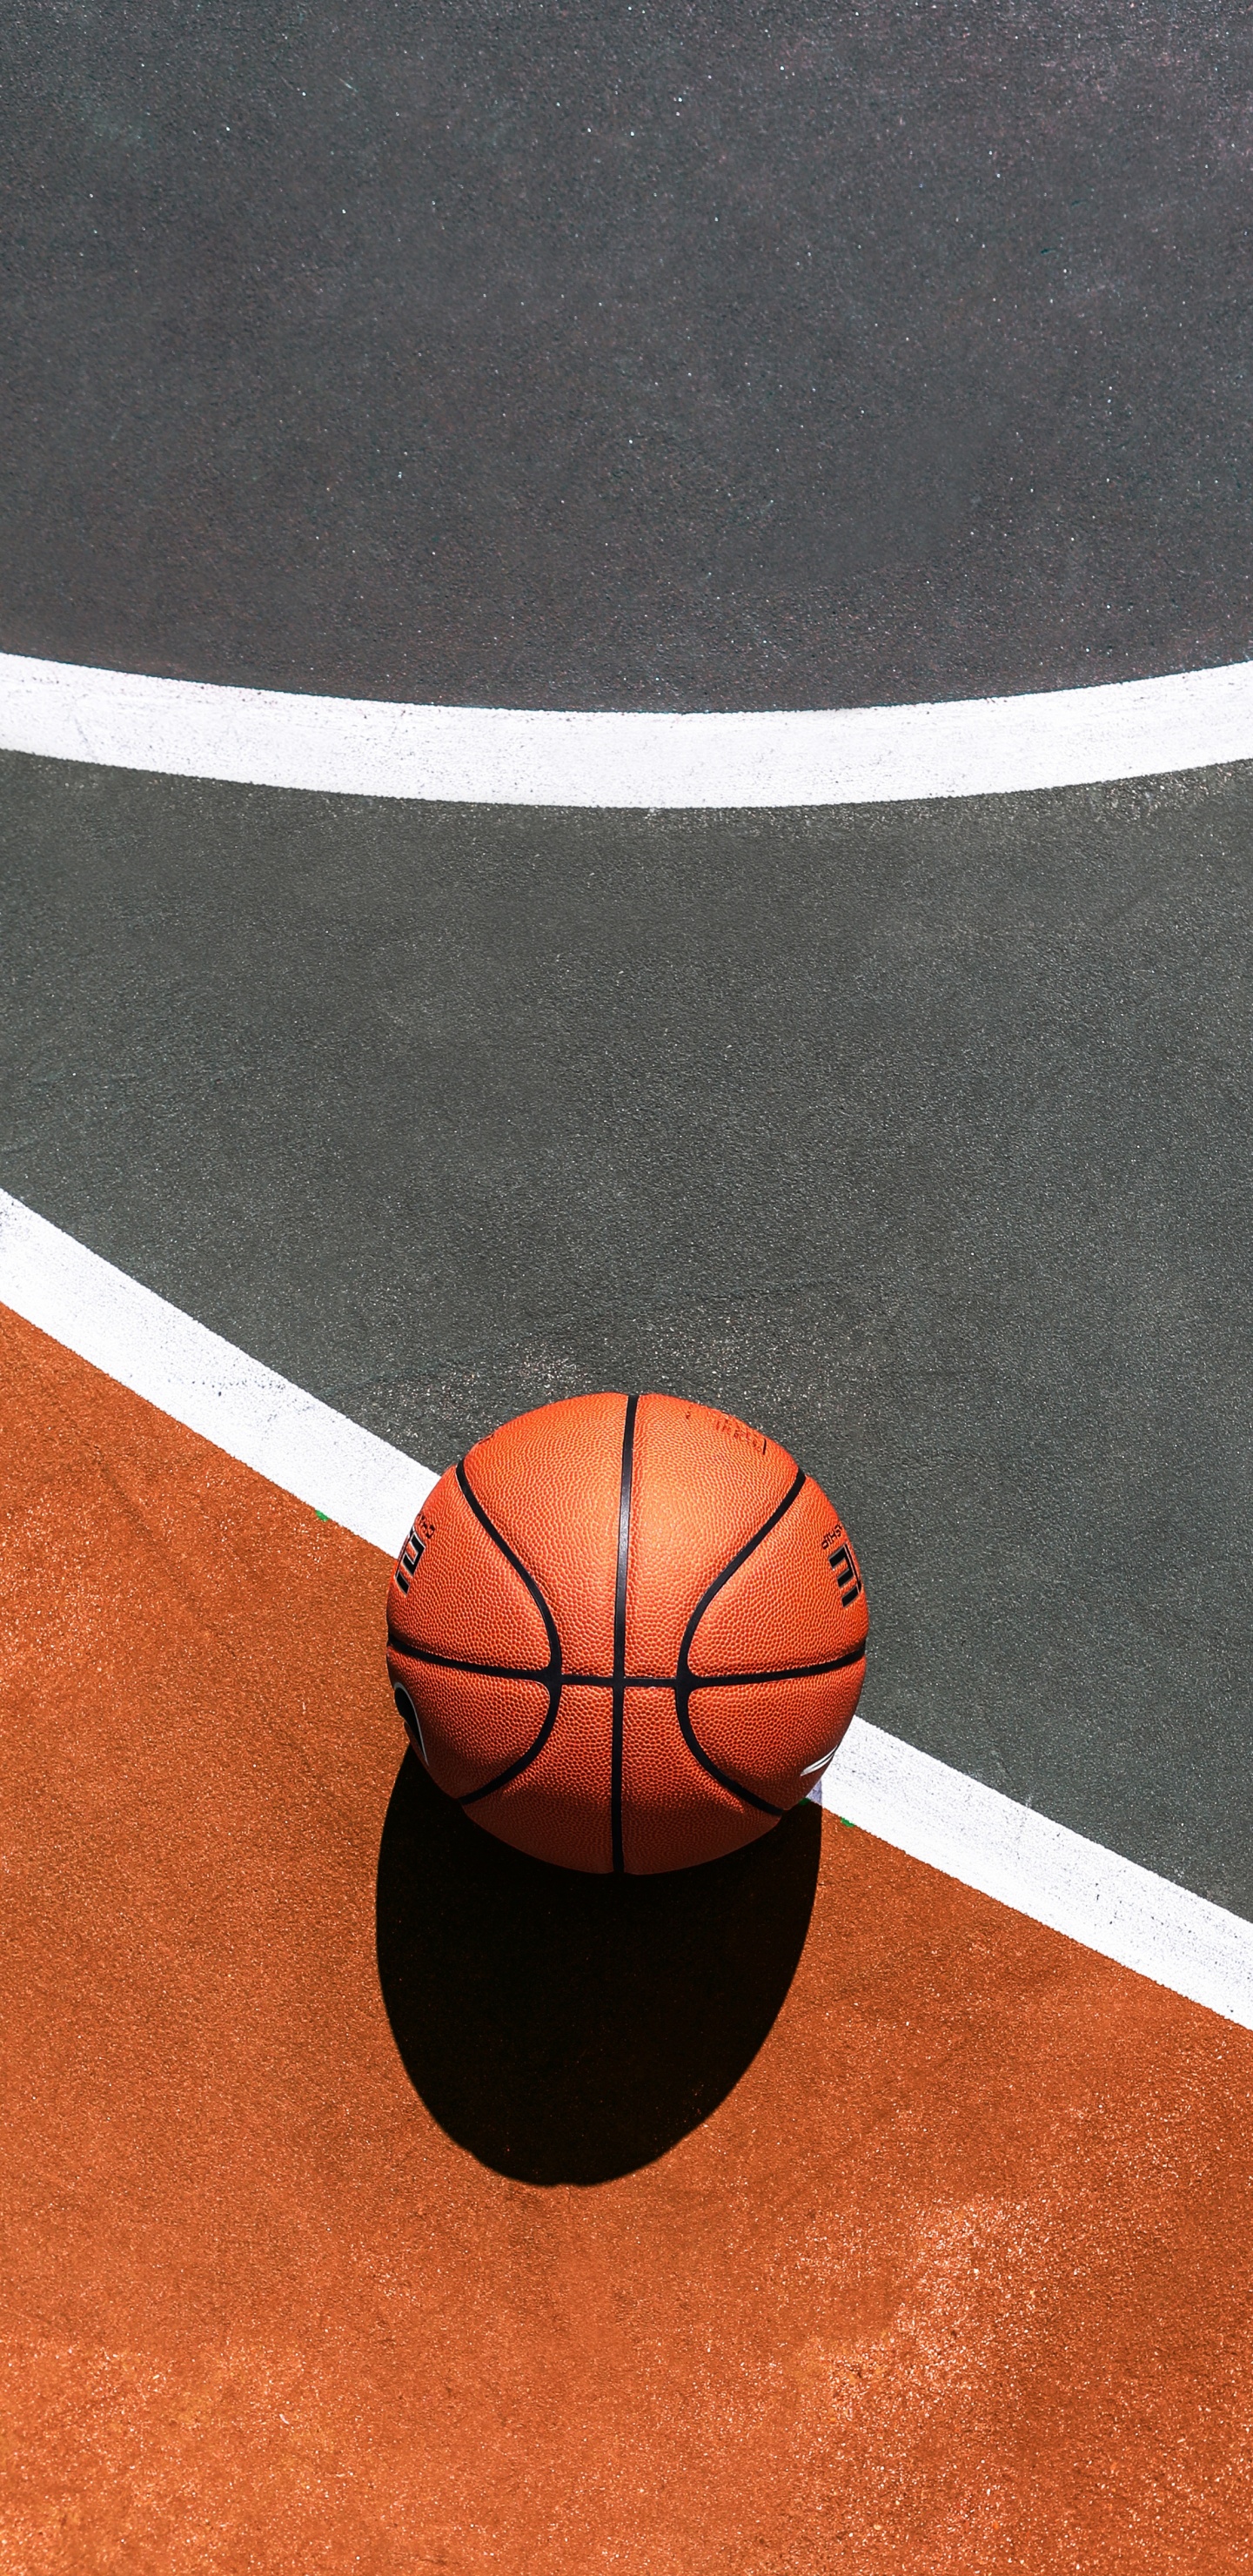 篮球, 篮球场, 运动场地, 球, 团队运动 壁纸 1440x2960 允许